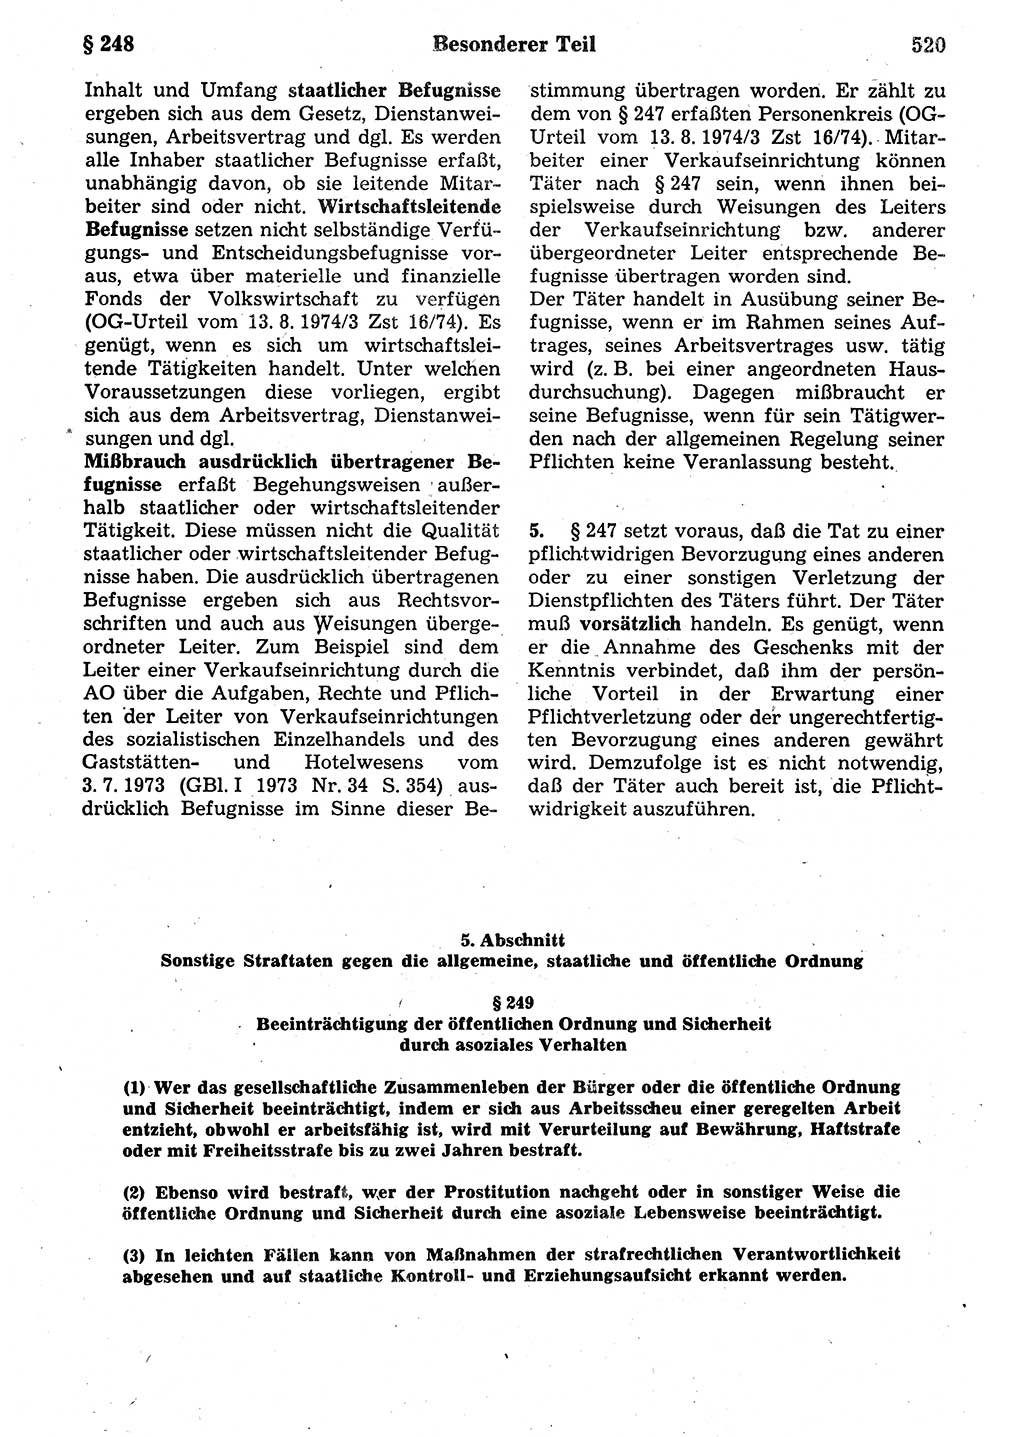 Strafrecht der Deutschen Demokratischen Republik (DDR), Kommentar zum Strafgesetzbuch (StGB) 1987, Seite 520 (Strafr. DDR Komm. StGB 1987, S. 520)